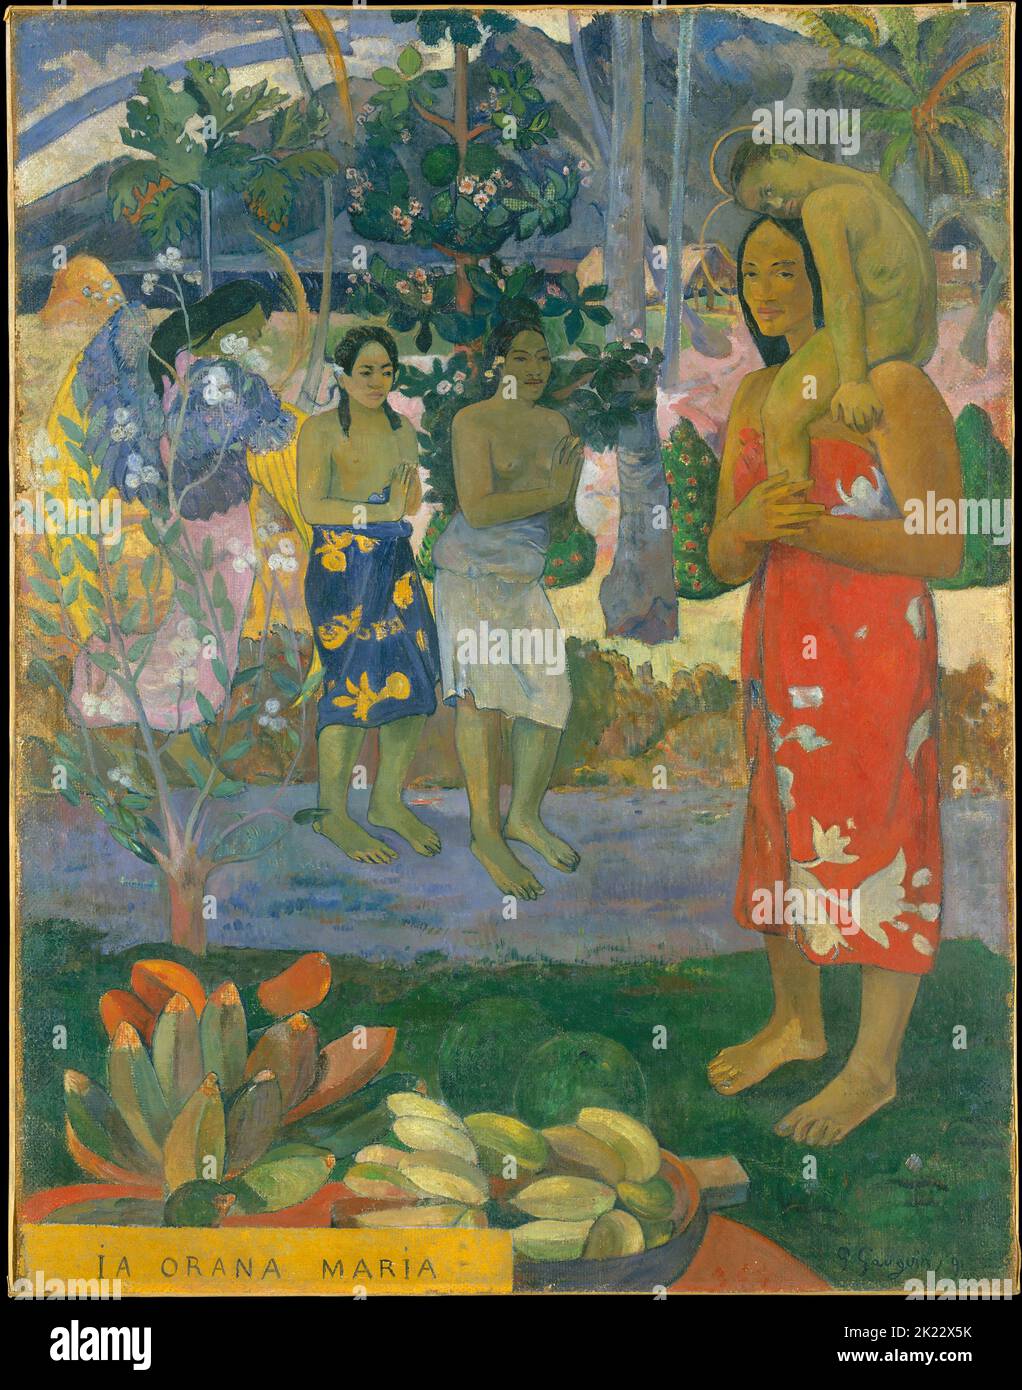 Tahití: 'Ia Orana María' (Ave María). Óleo sobre lienzo de Paul Gauguin (7 de junio de 1848 - 8 de mayo de 1903), 1891. Paul Gauguin nació en París en 1848 y pasó parte de su infancia en Perú. Trabajó como corredor de bolsa con poco éxito, y sufrió episodios de depresión severa. También pintó. En 1891, Gauguin, frustrado por la falta de reconocimiento en su país y financieramente indigente, navegó a los trópicos para escapar de la civilización europea y 'todo lo que es artificial y convencional'. Su tiempo allí, particularmente en Tahití y en las Islas Marquesas, fue objeto de mucho interés. Foto de stock